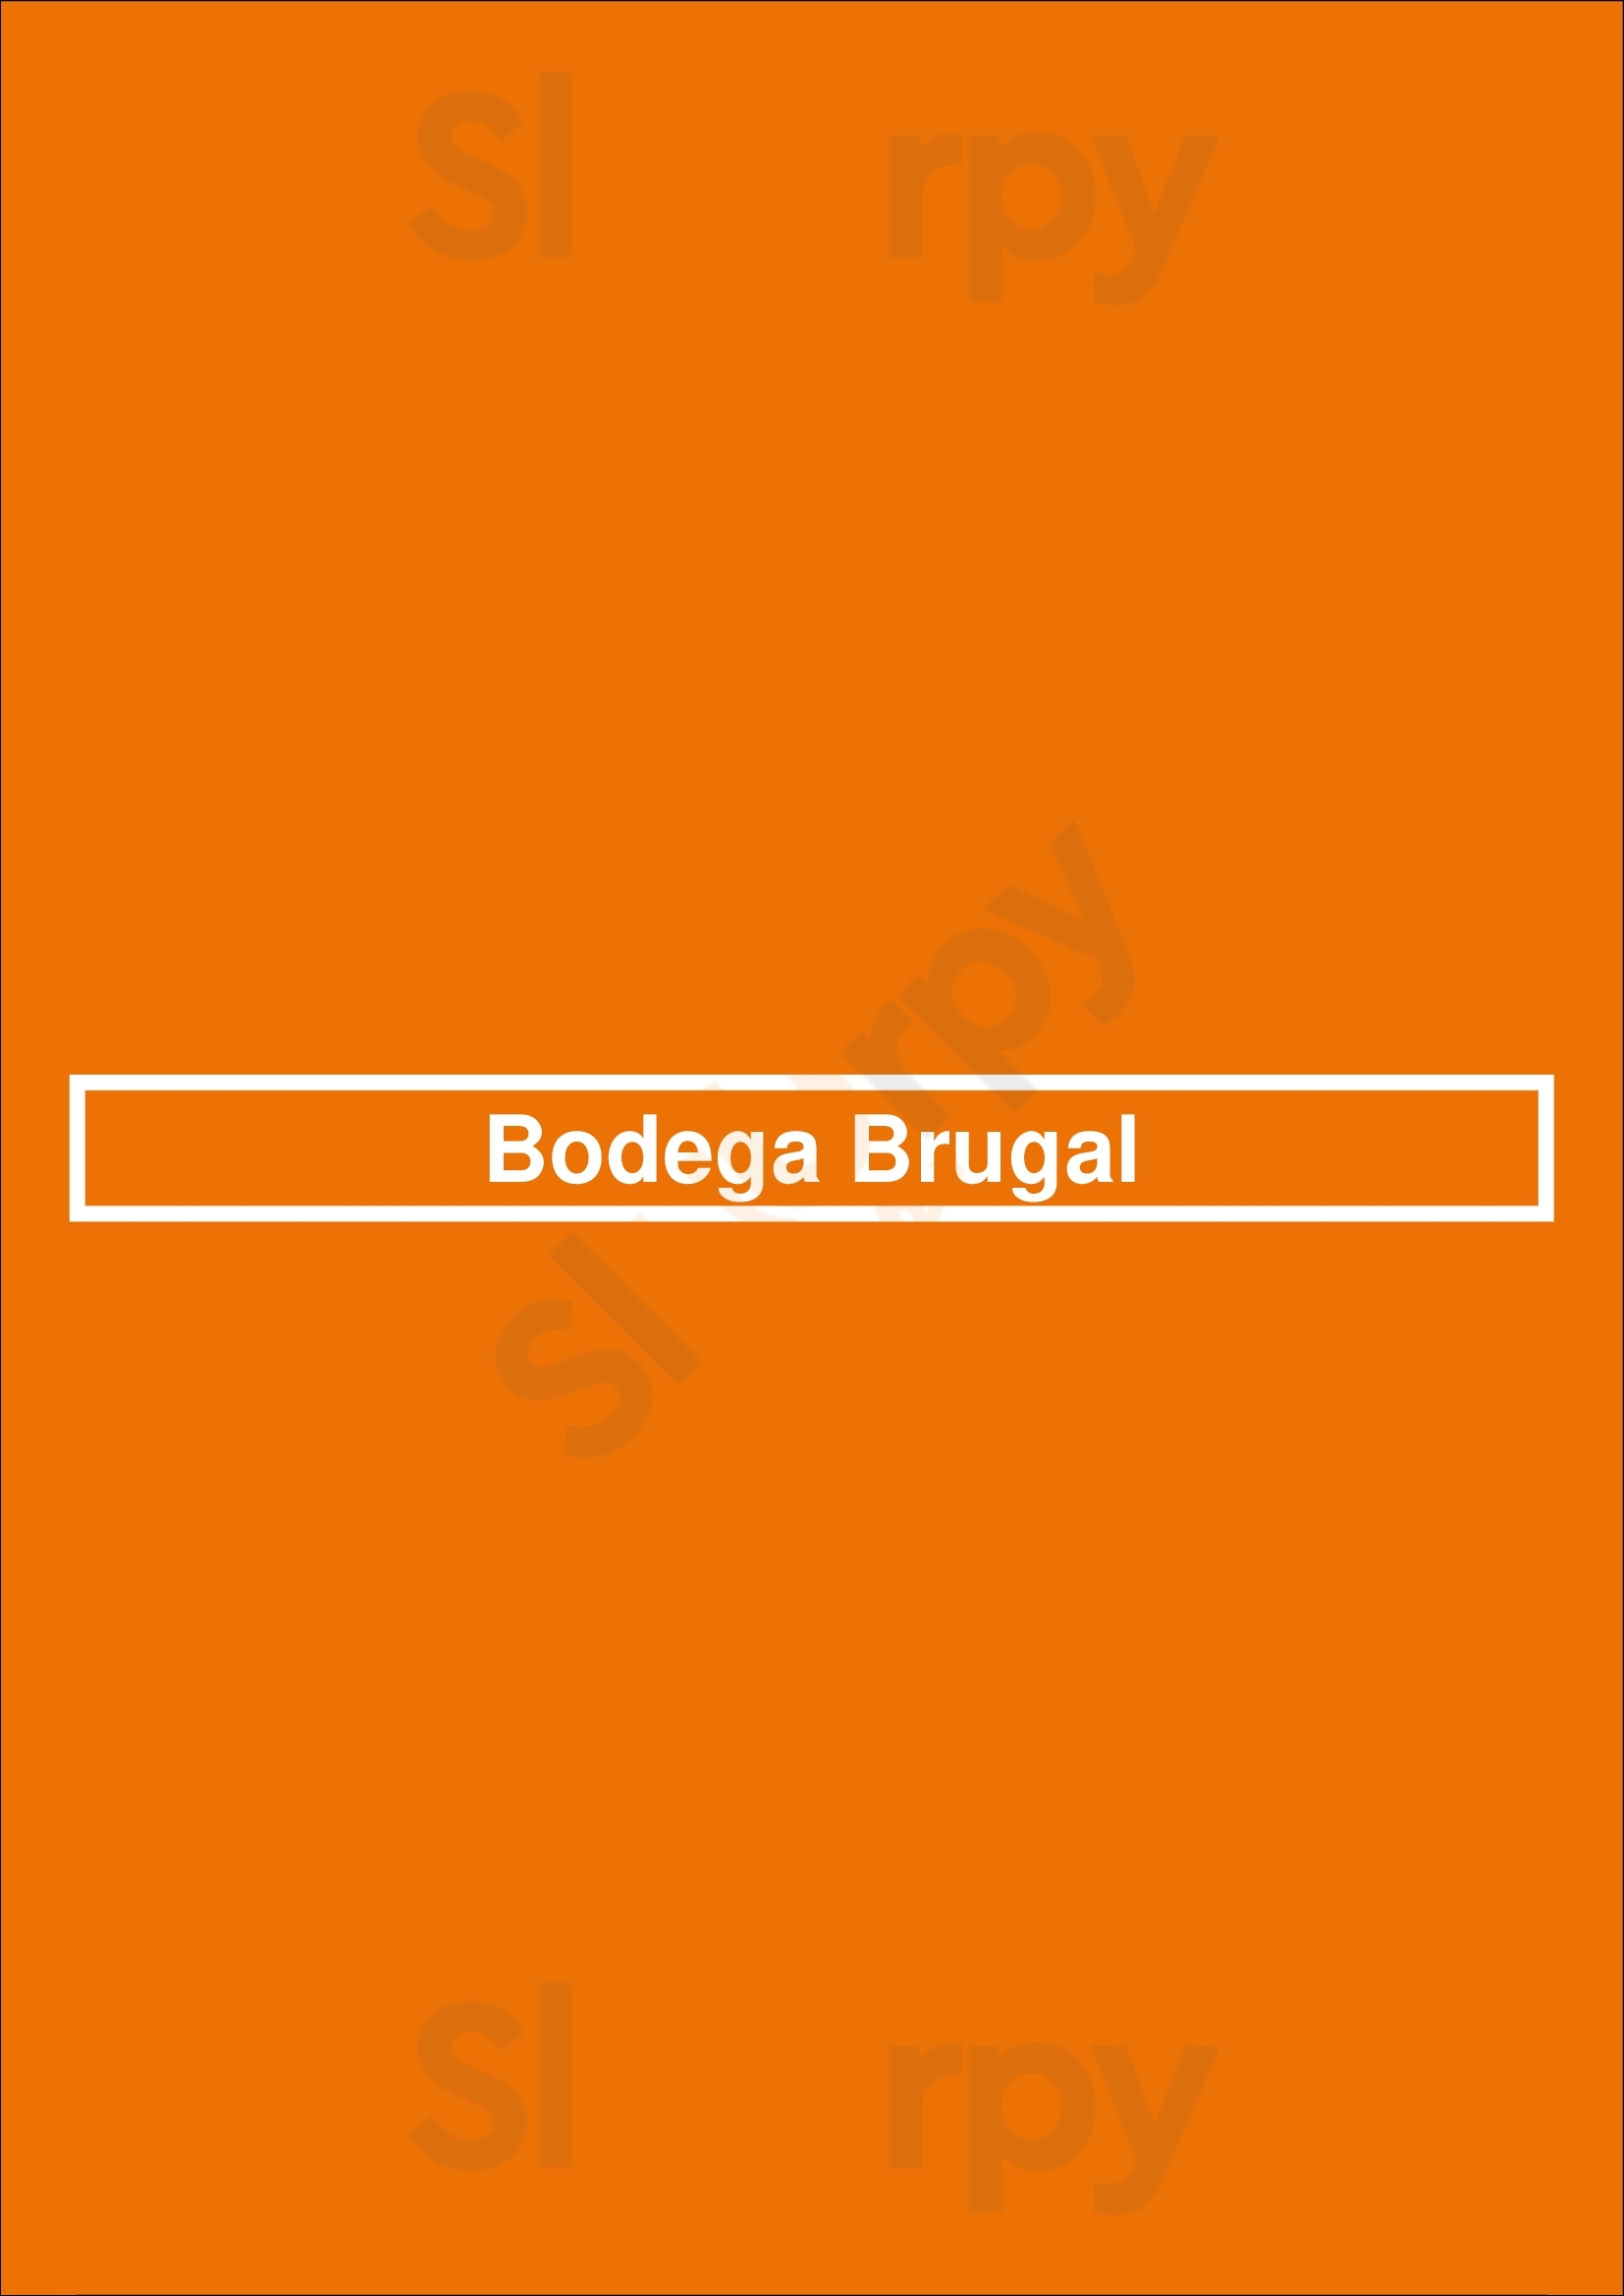 Bodega Brugal Barcelona Menu - 1